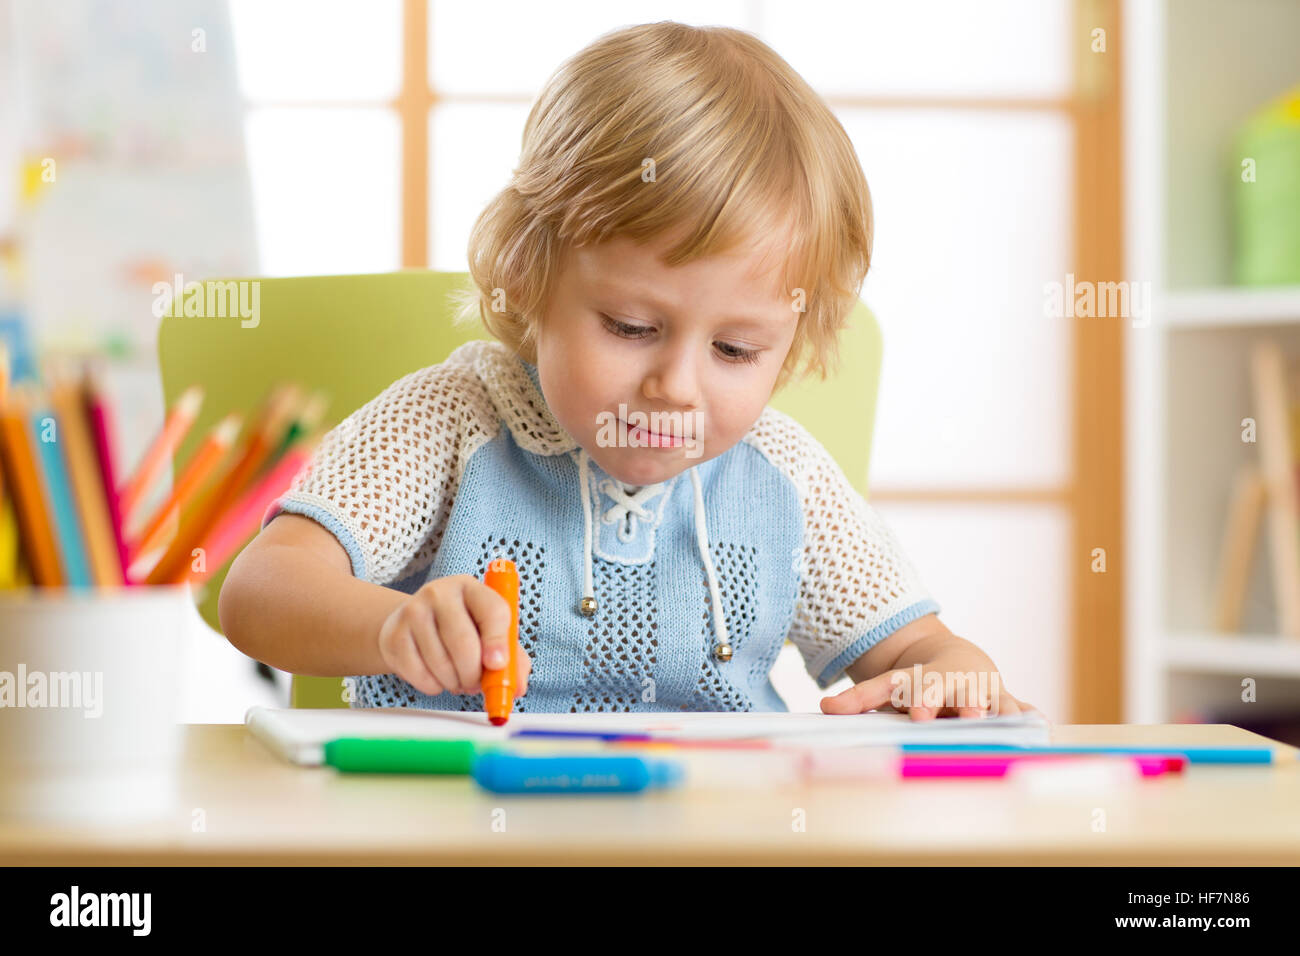 Cute little boy is drawing with felt-tip pen in preschool Stock Photo